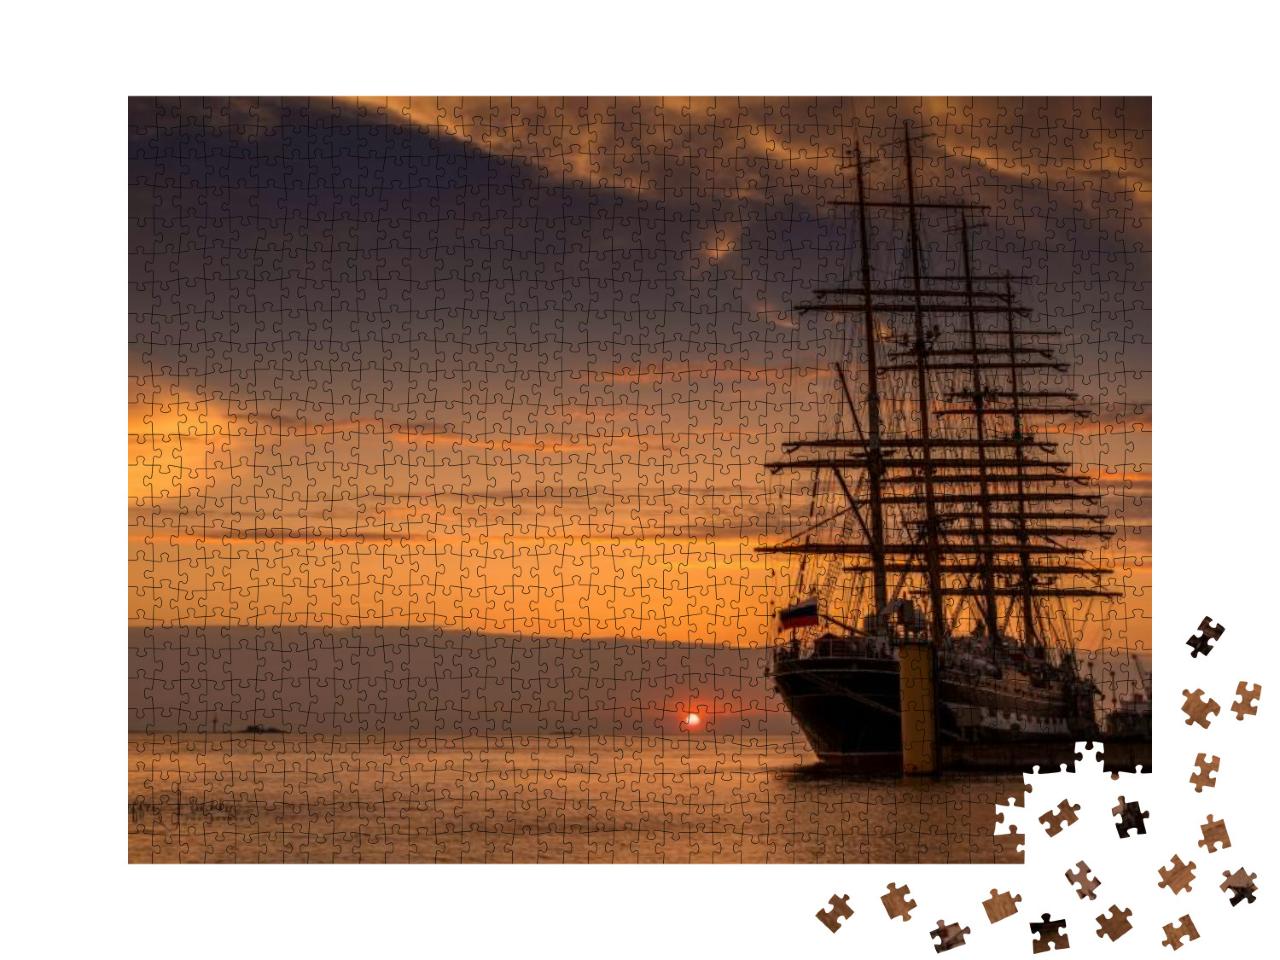 Puzzle 1000 Teile „Segelschiff zurück im Hafen, Nordsee“